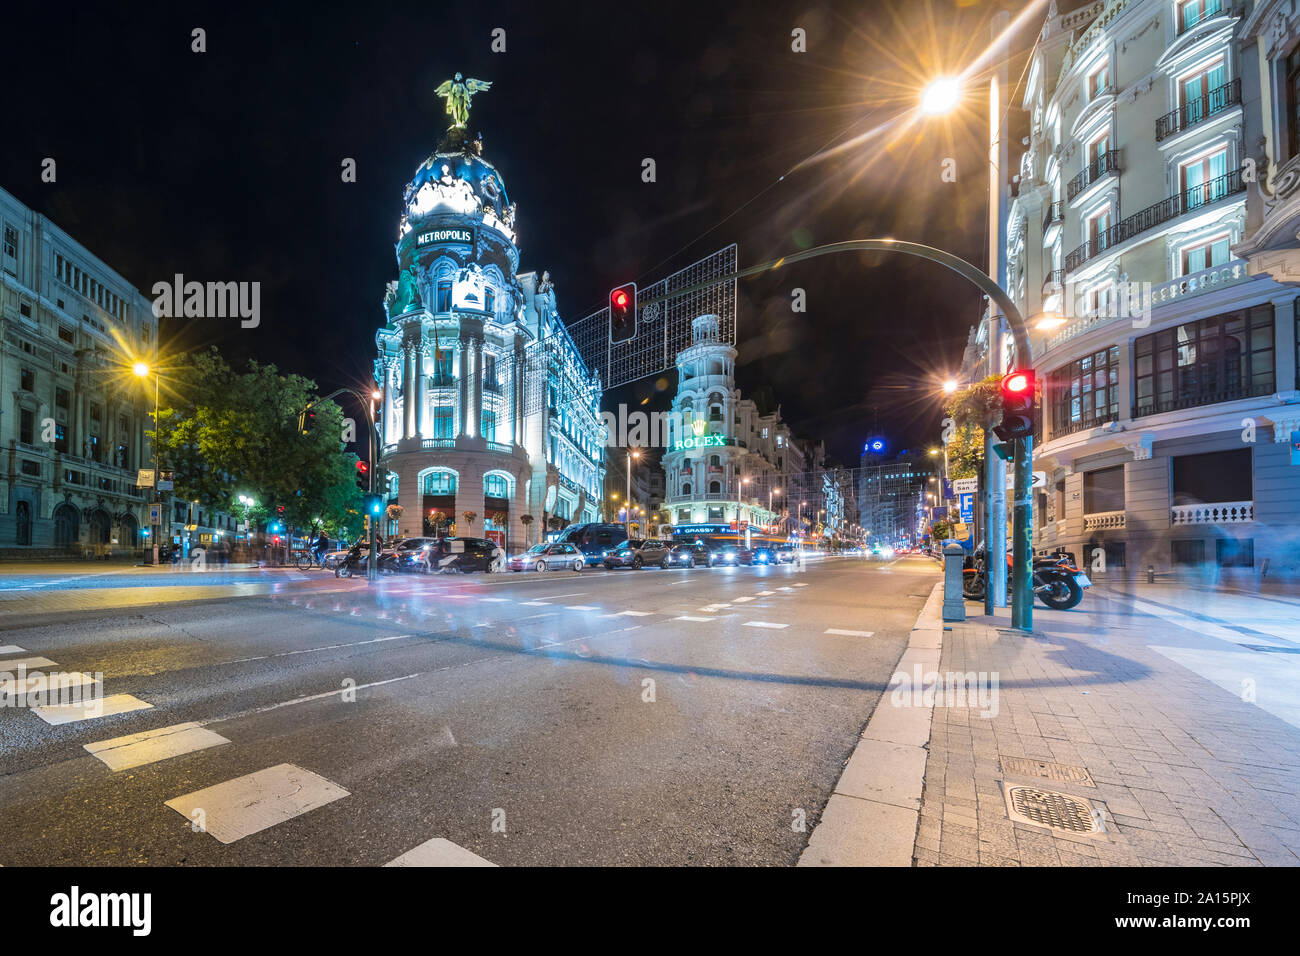 Circulo De Bellas Artes with Edificio Metropolis located at the Gran Via, Madrid, Spain Stock Photo